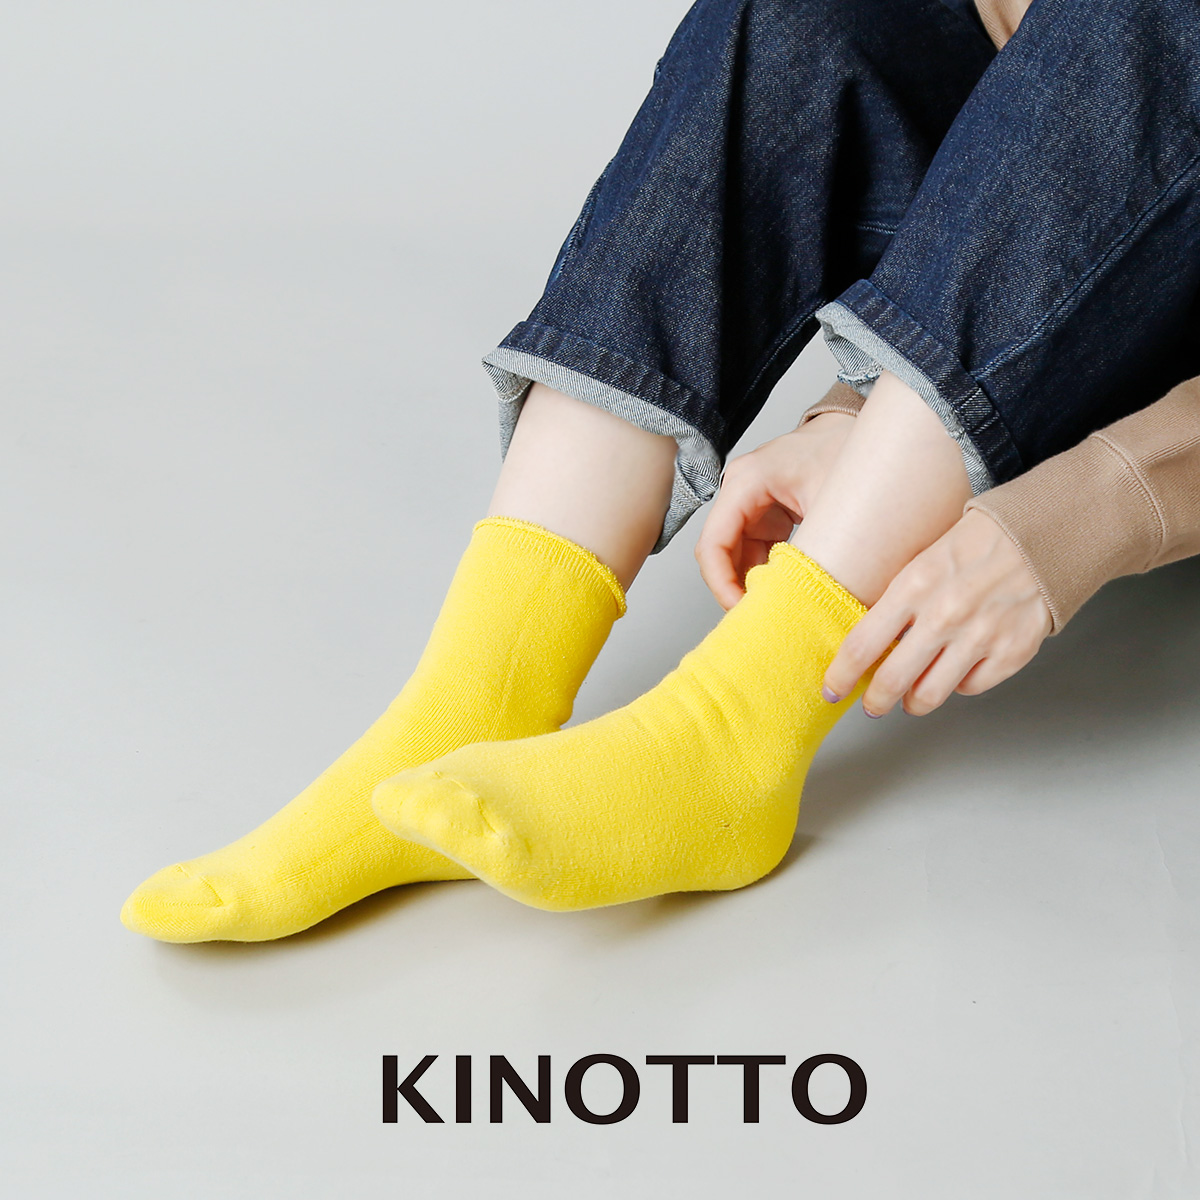 KINOTTO(キノット)リバーシブルパイルソックス 2231a002